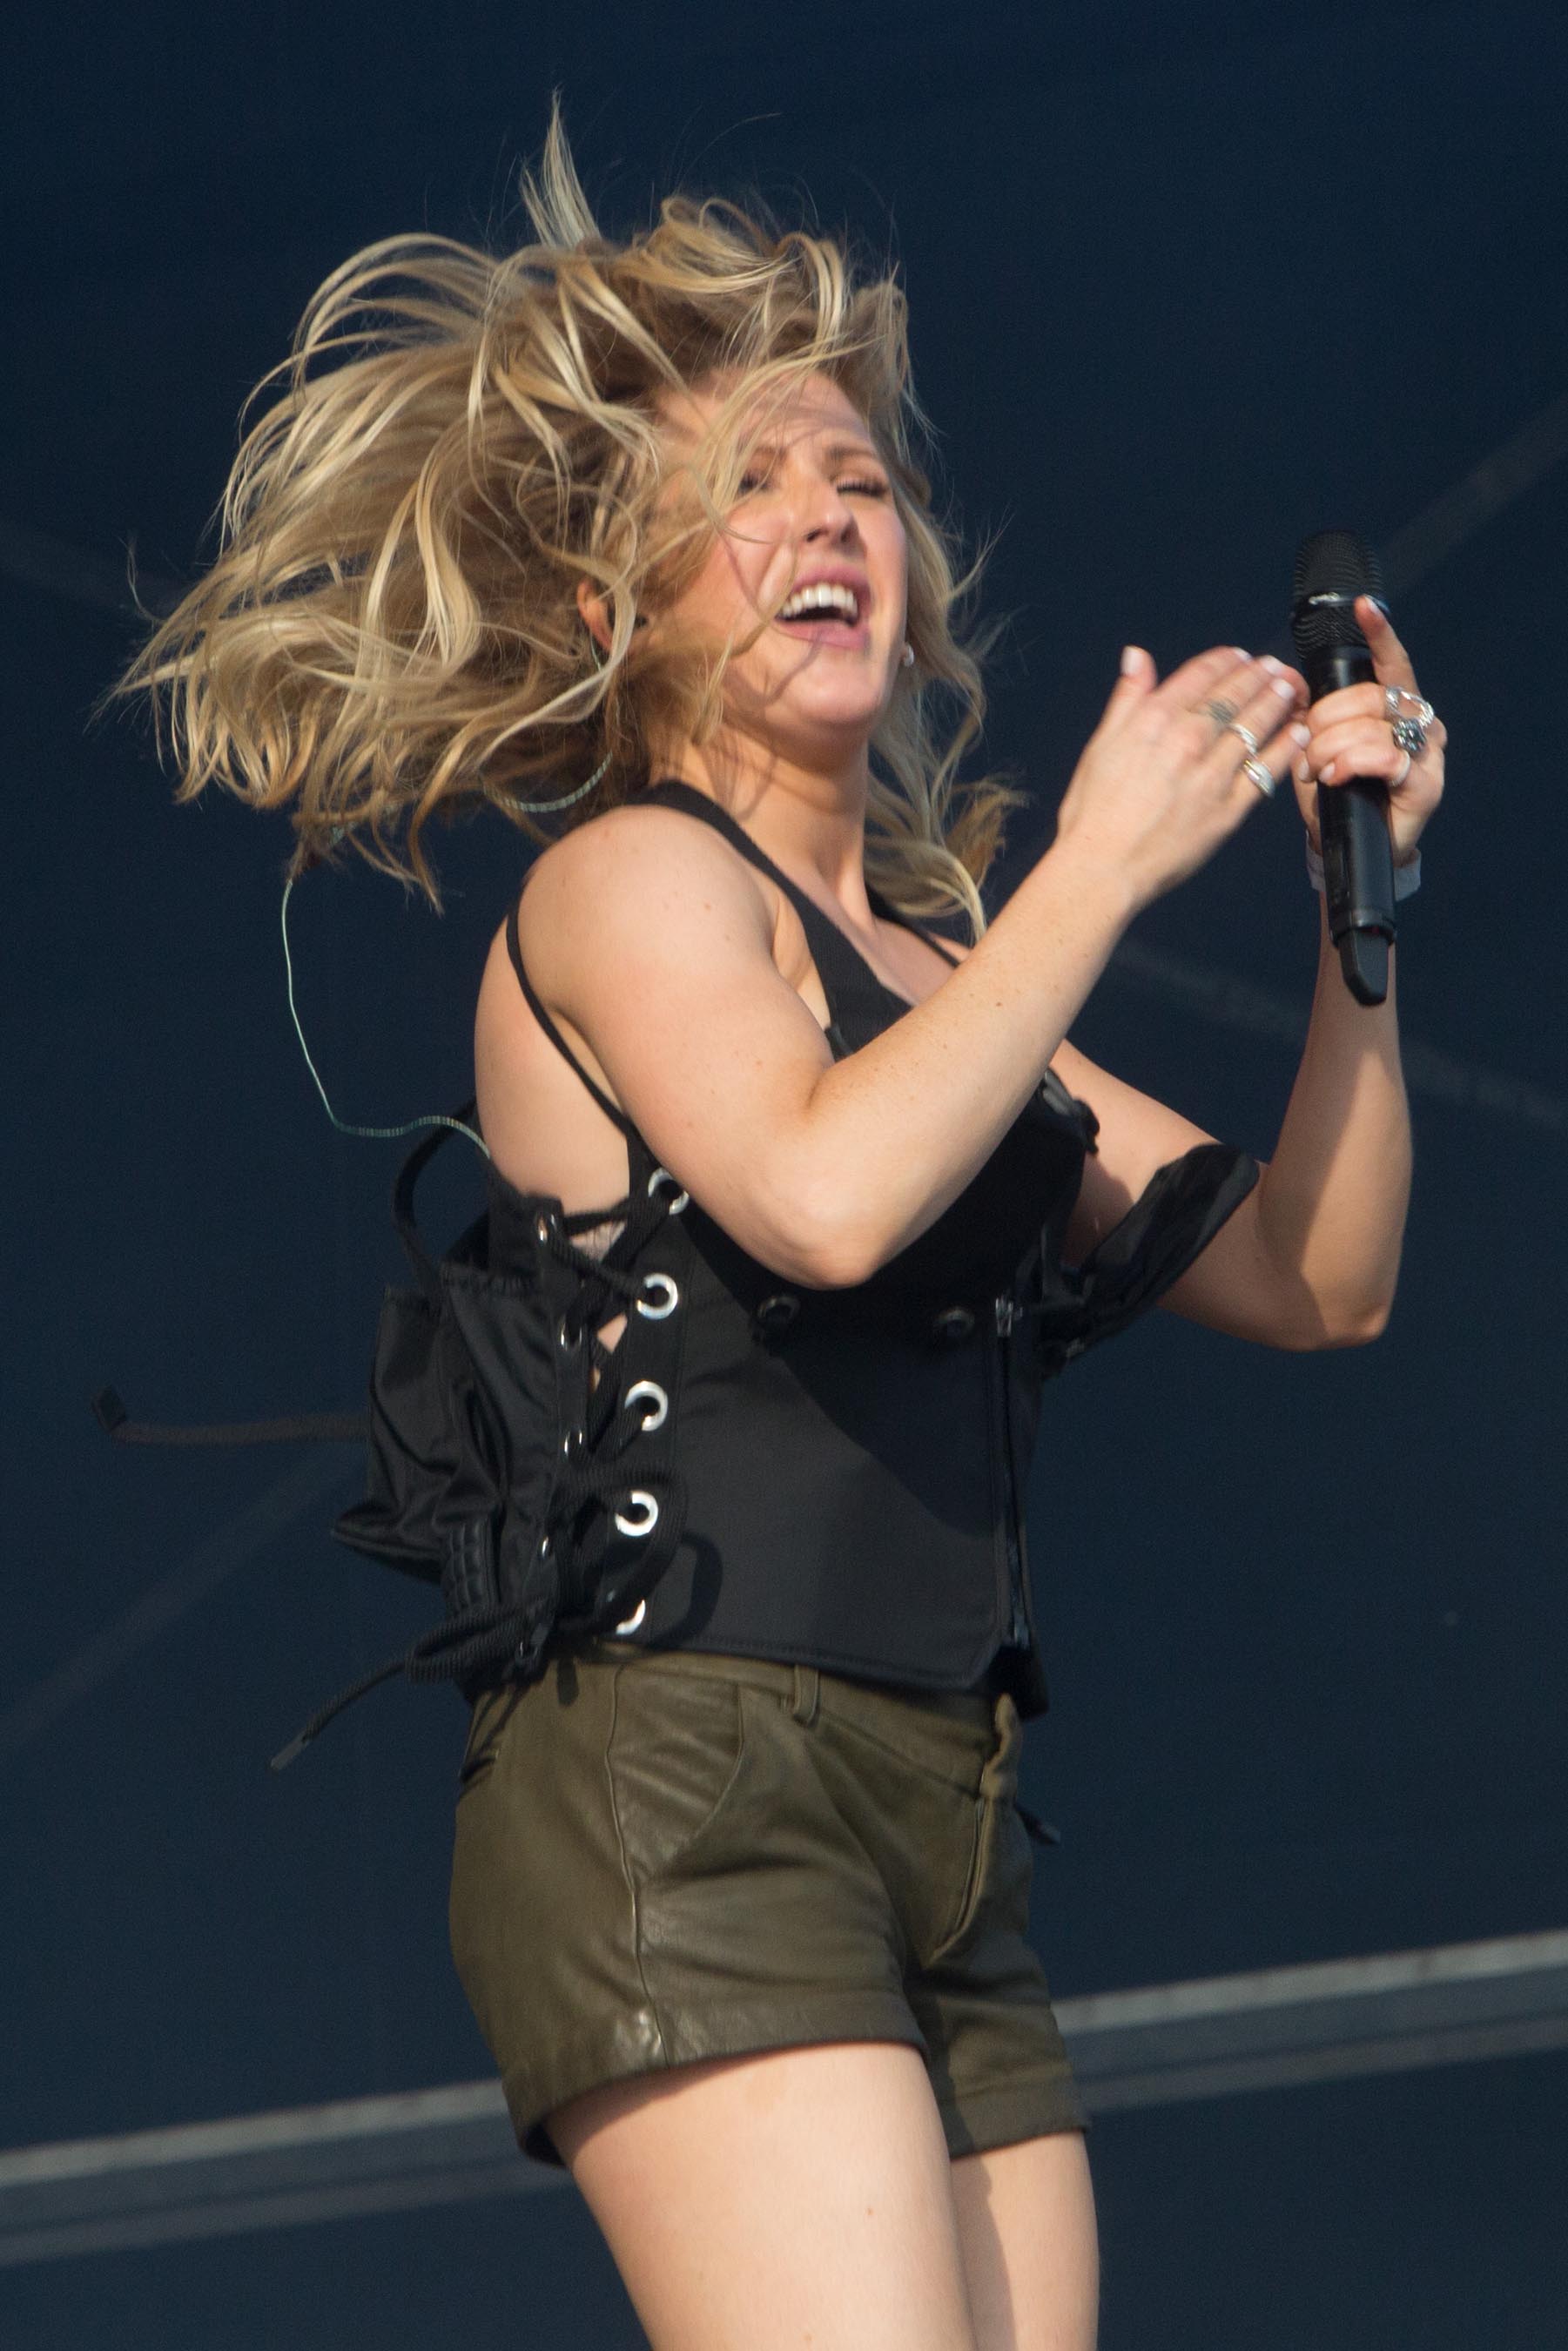 Ellie Goulding performing at Radio 1’s Big Weekend